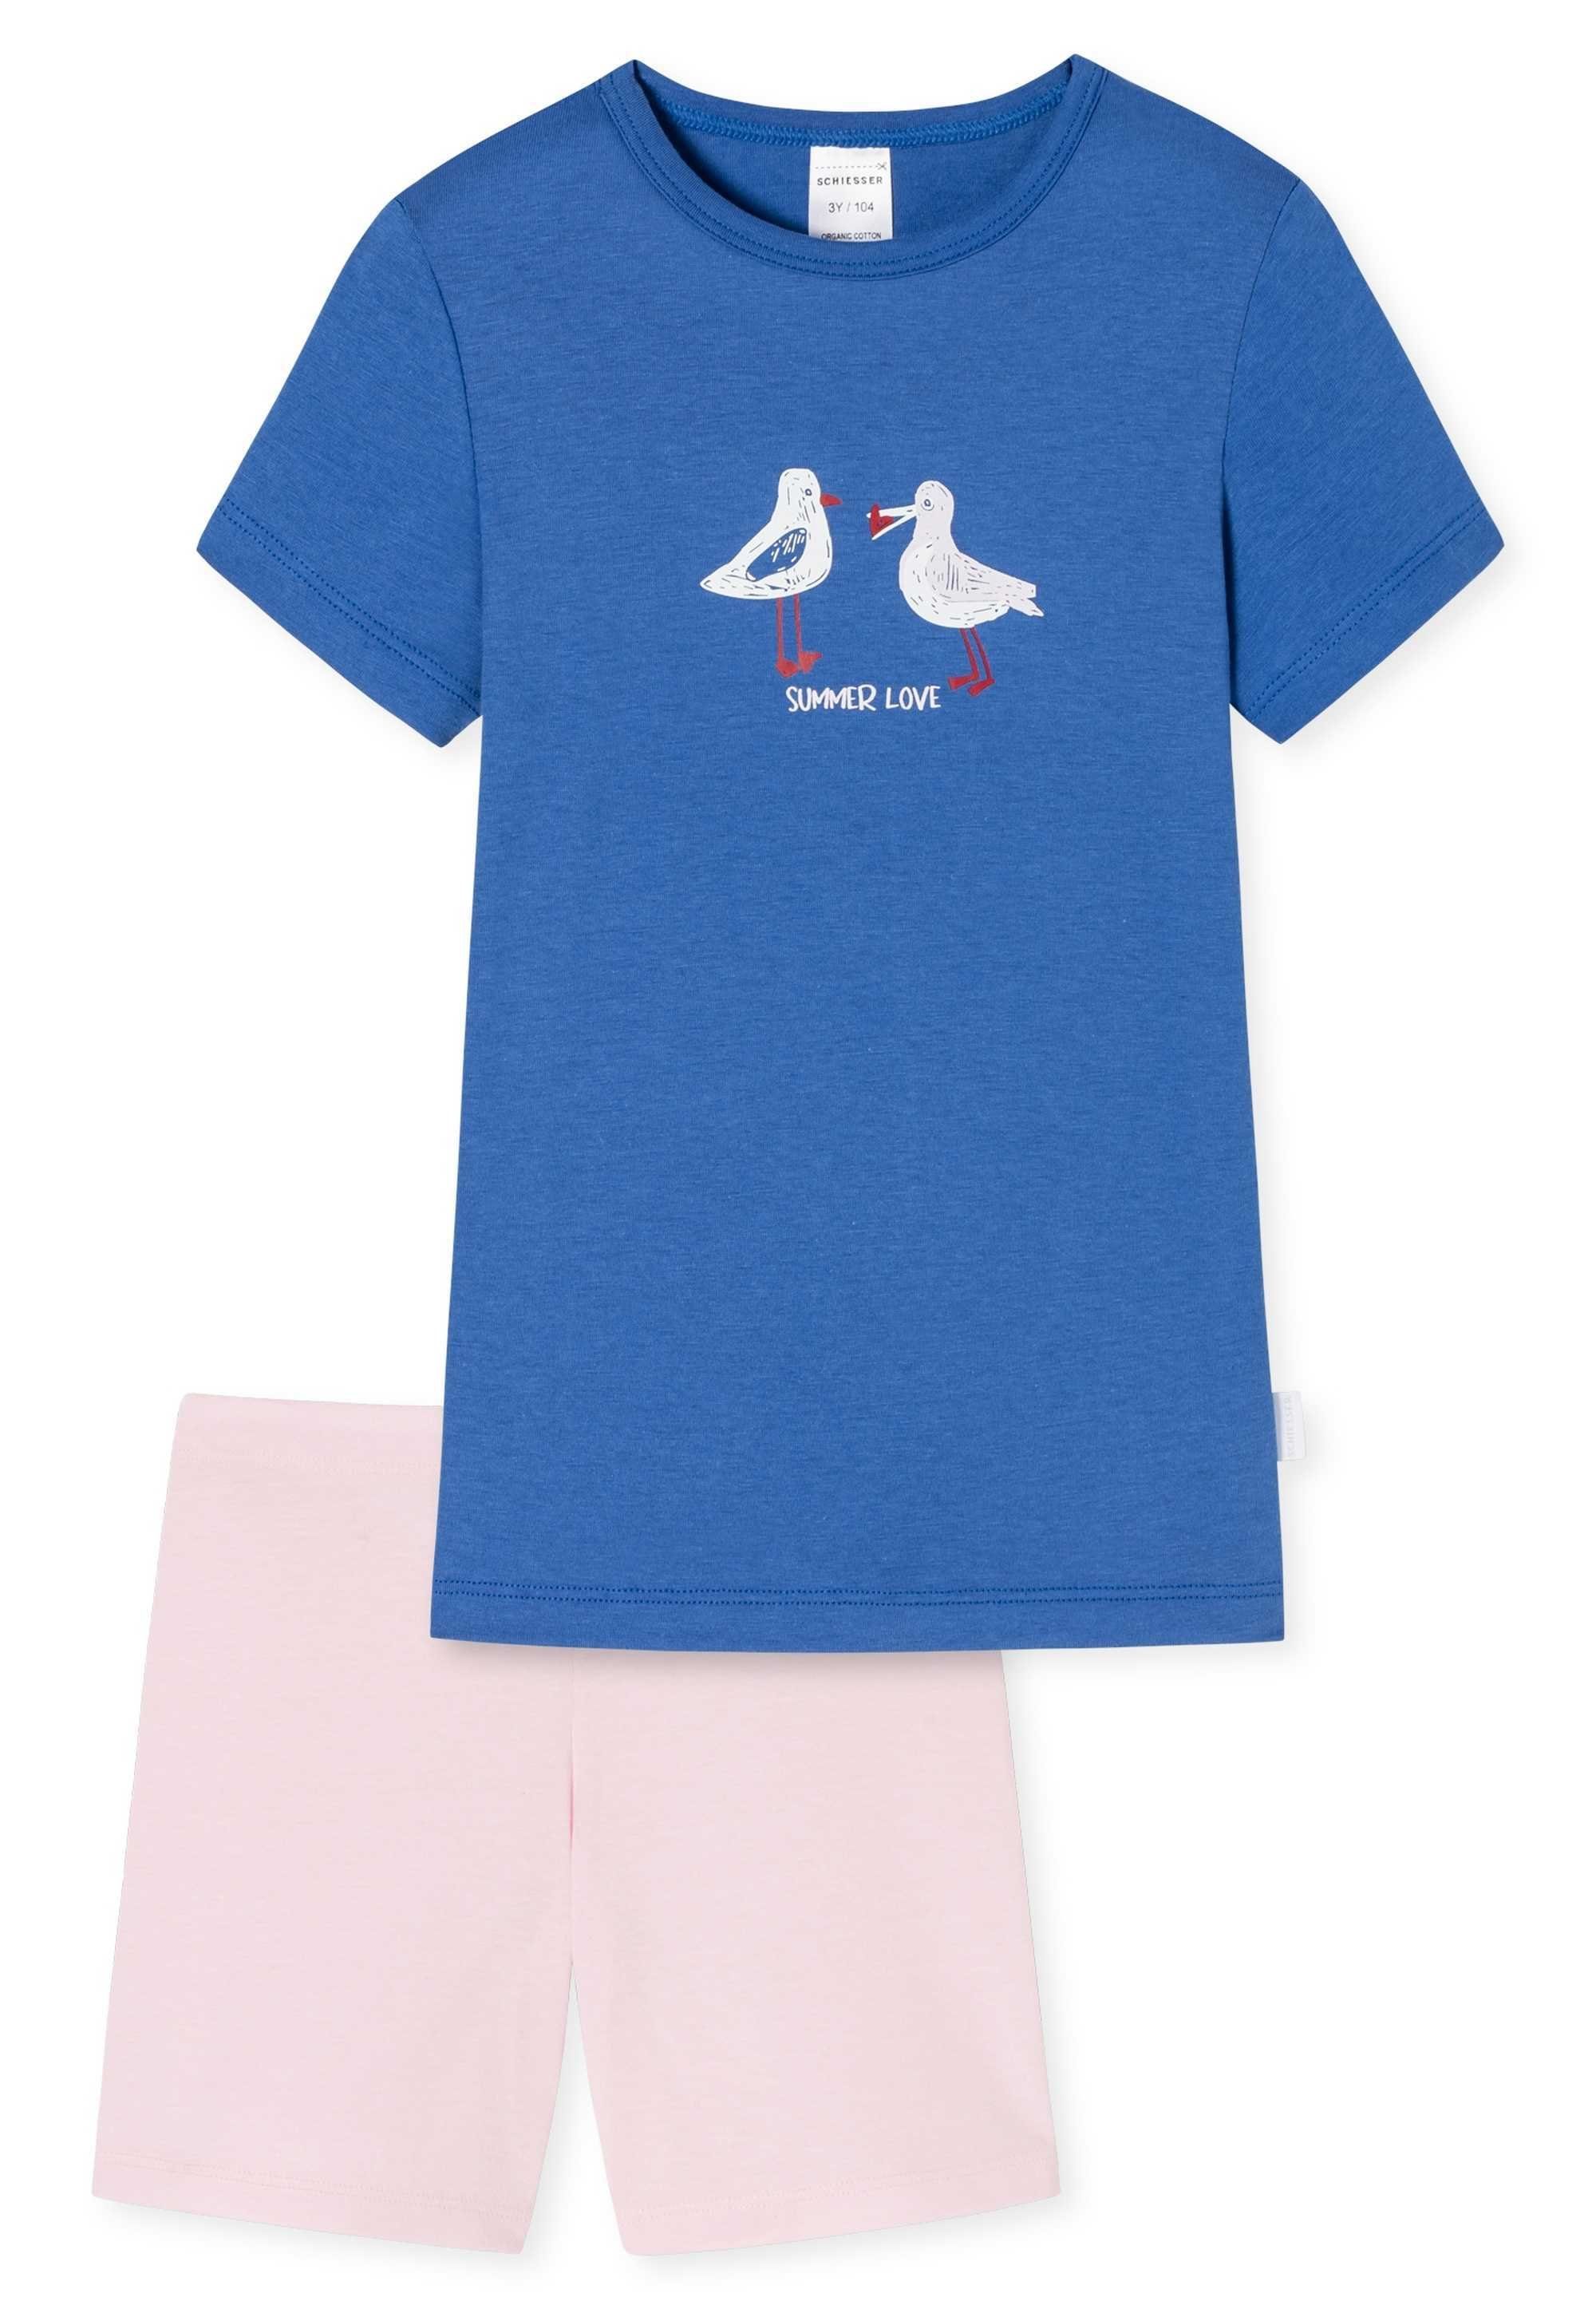 kurzarm, Schiesser Pyjama - Kinder Mädchen Blau/Rosa Schlafanzug